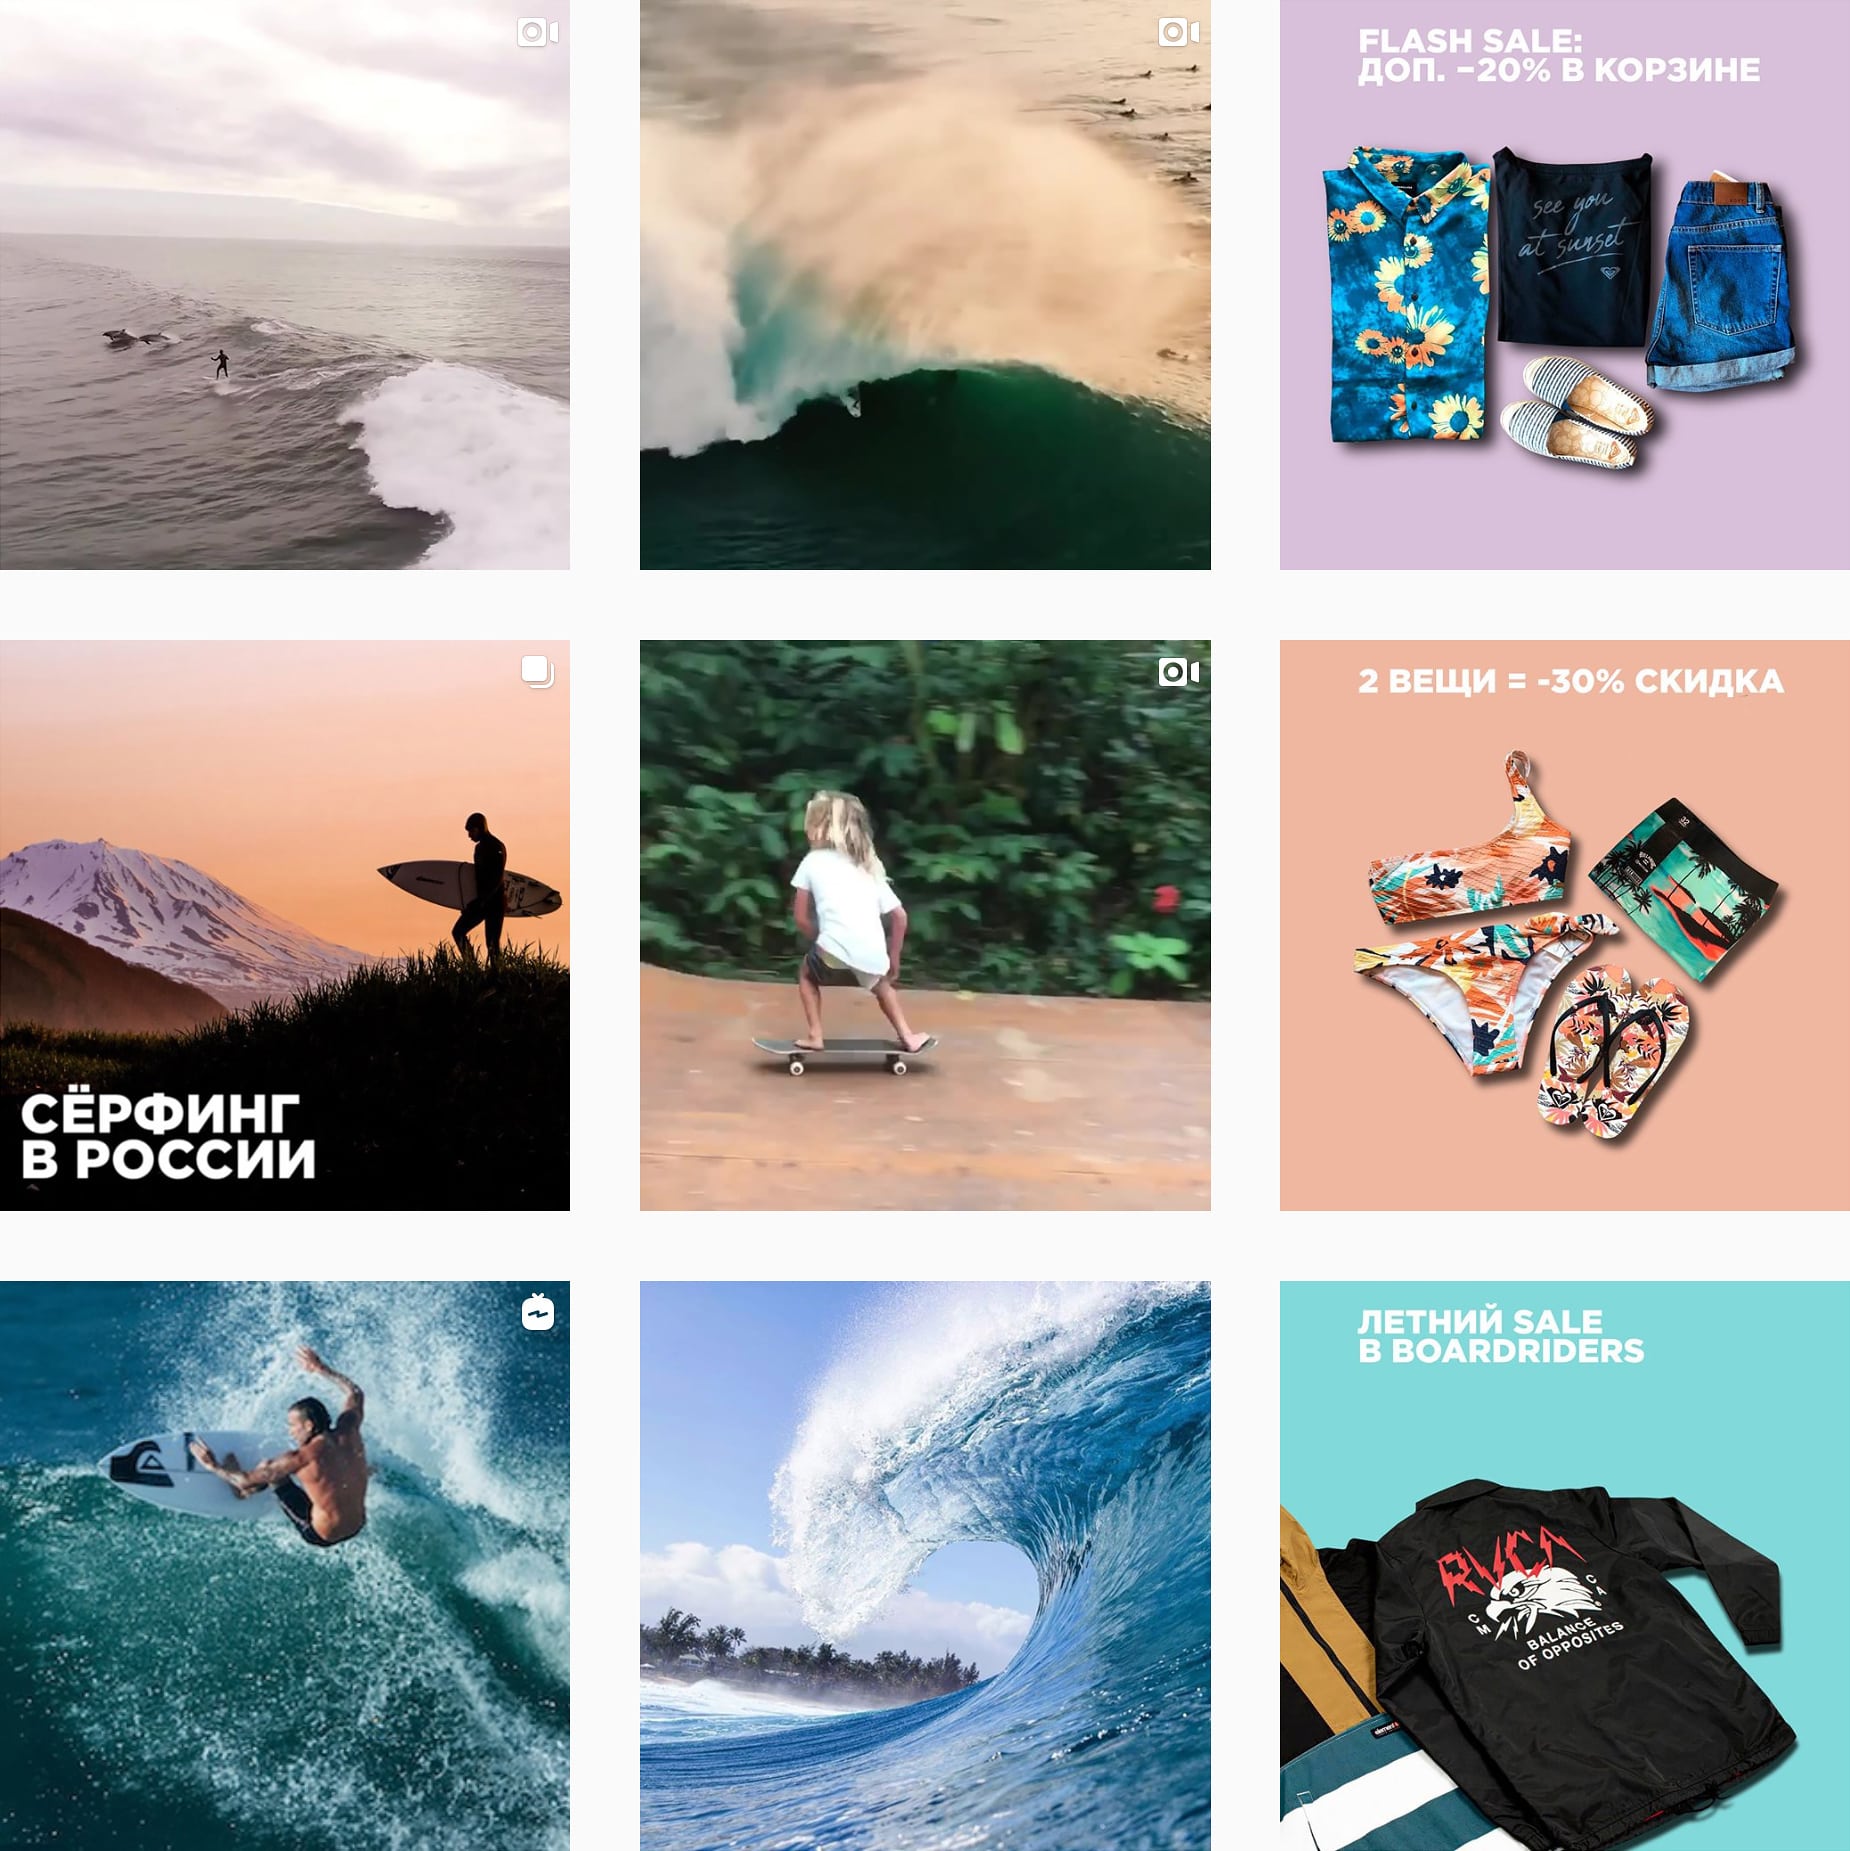 Instagram компании передает дух, айдентику и ценности брендов